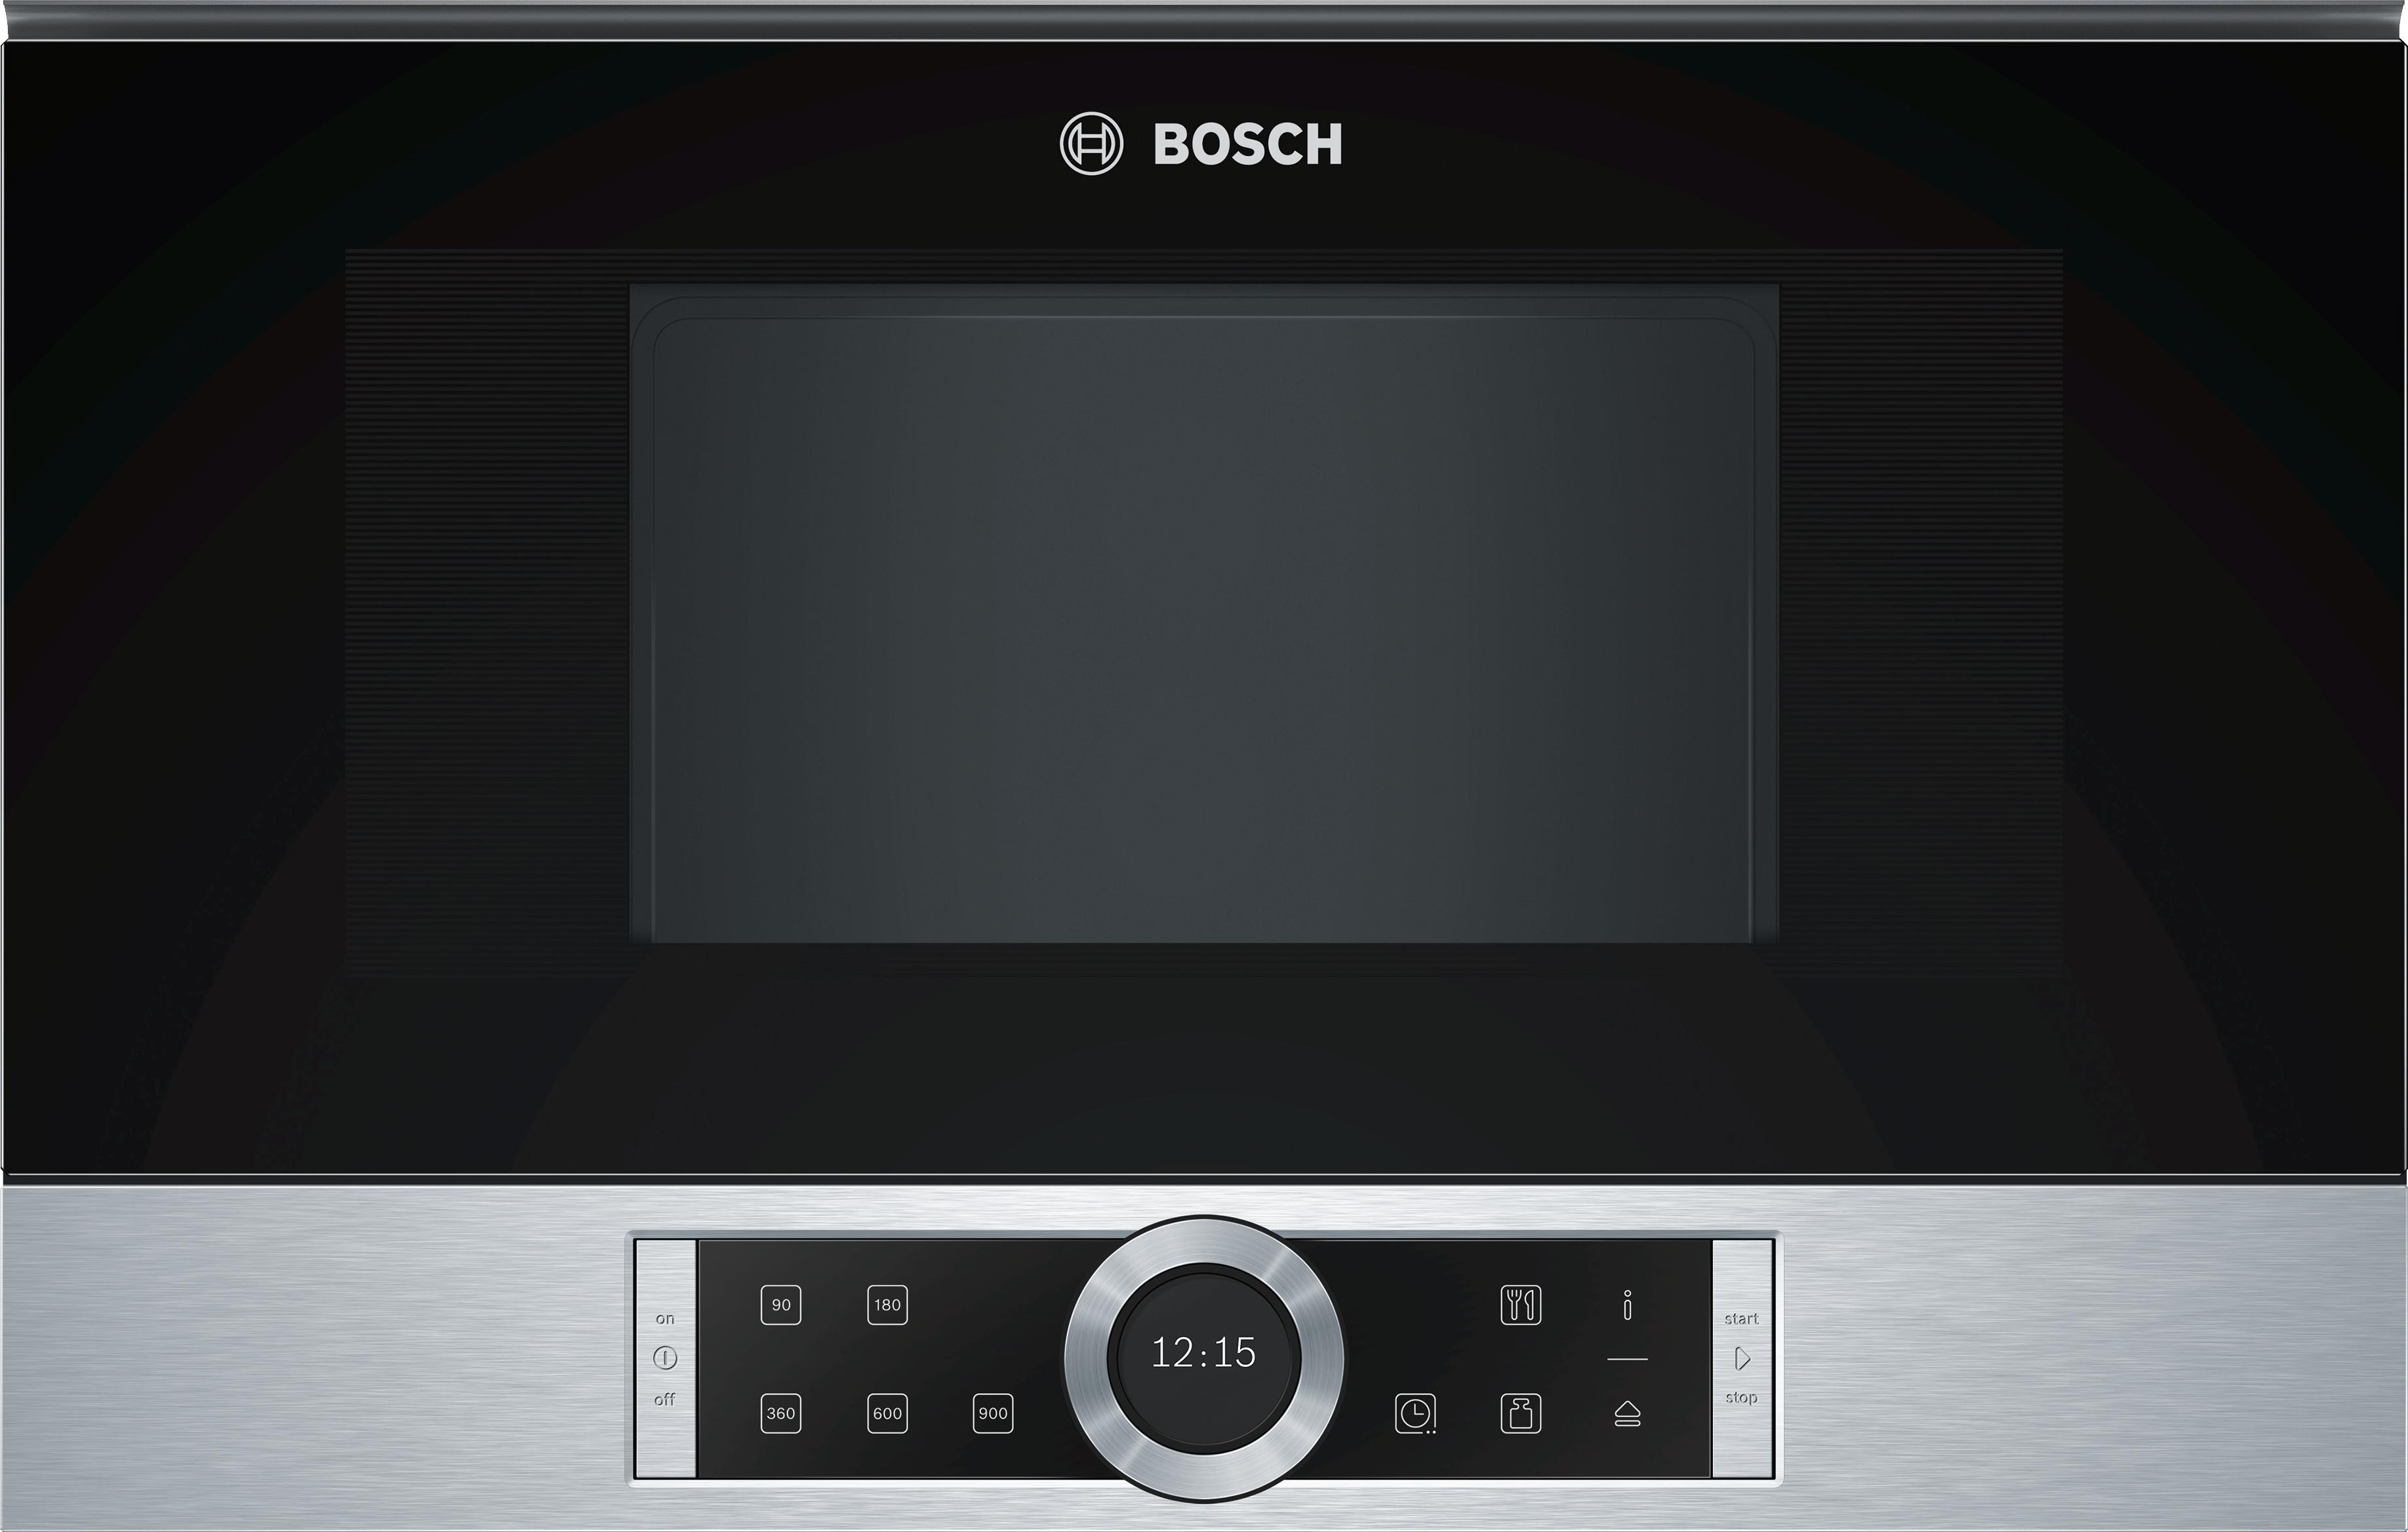 Печь бош купить. Bosch bel634gs1. Микроволновая печь встраиваемая Bosch bfl634gb1. Микроволновая печь встраиваемая Bosch bfr634gs1. Встраиваемая микроволновая печь СВЧ Bosch bfl634gs1.